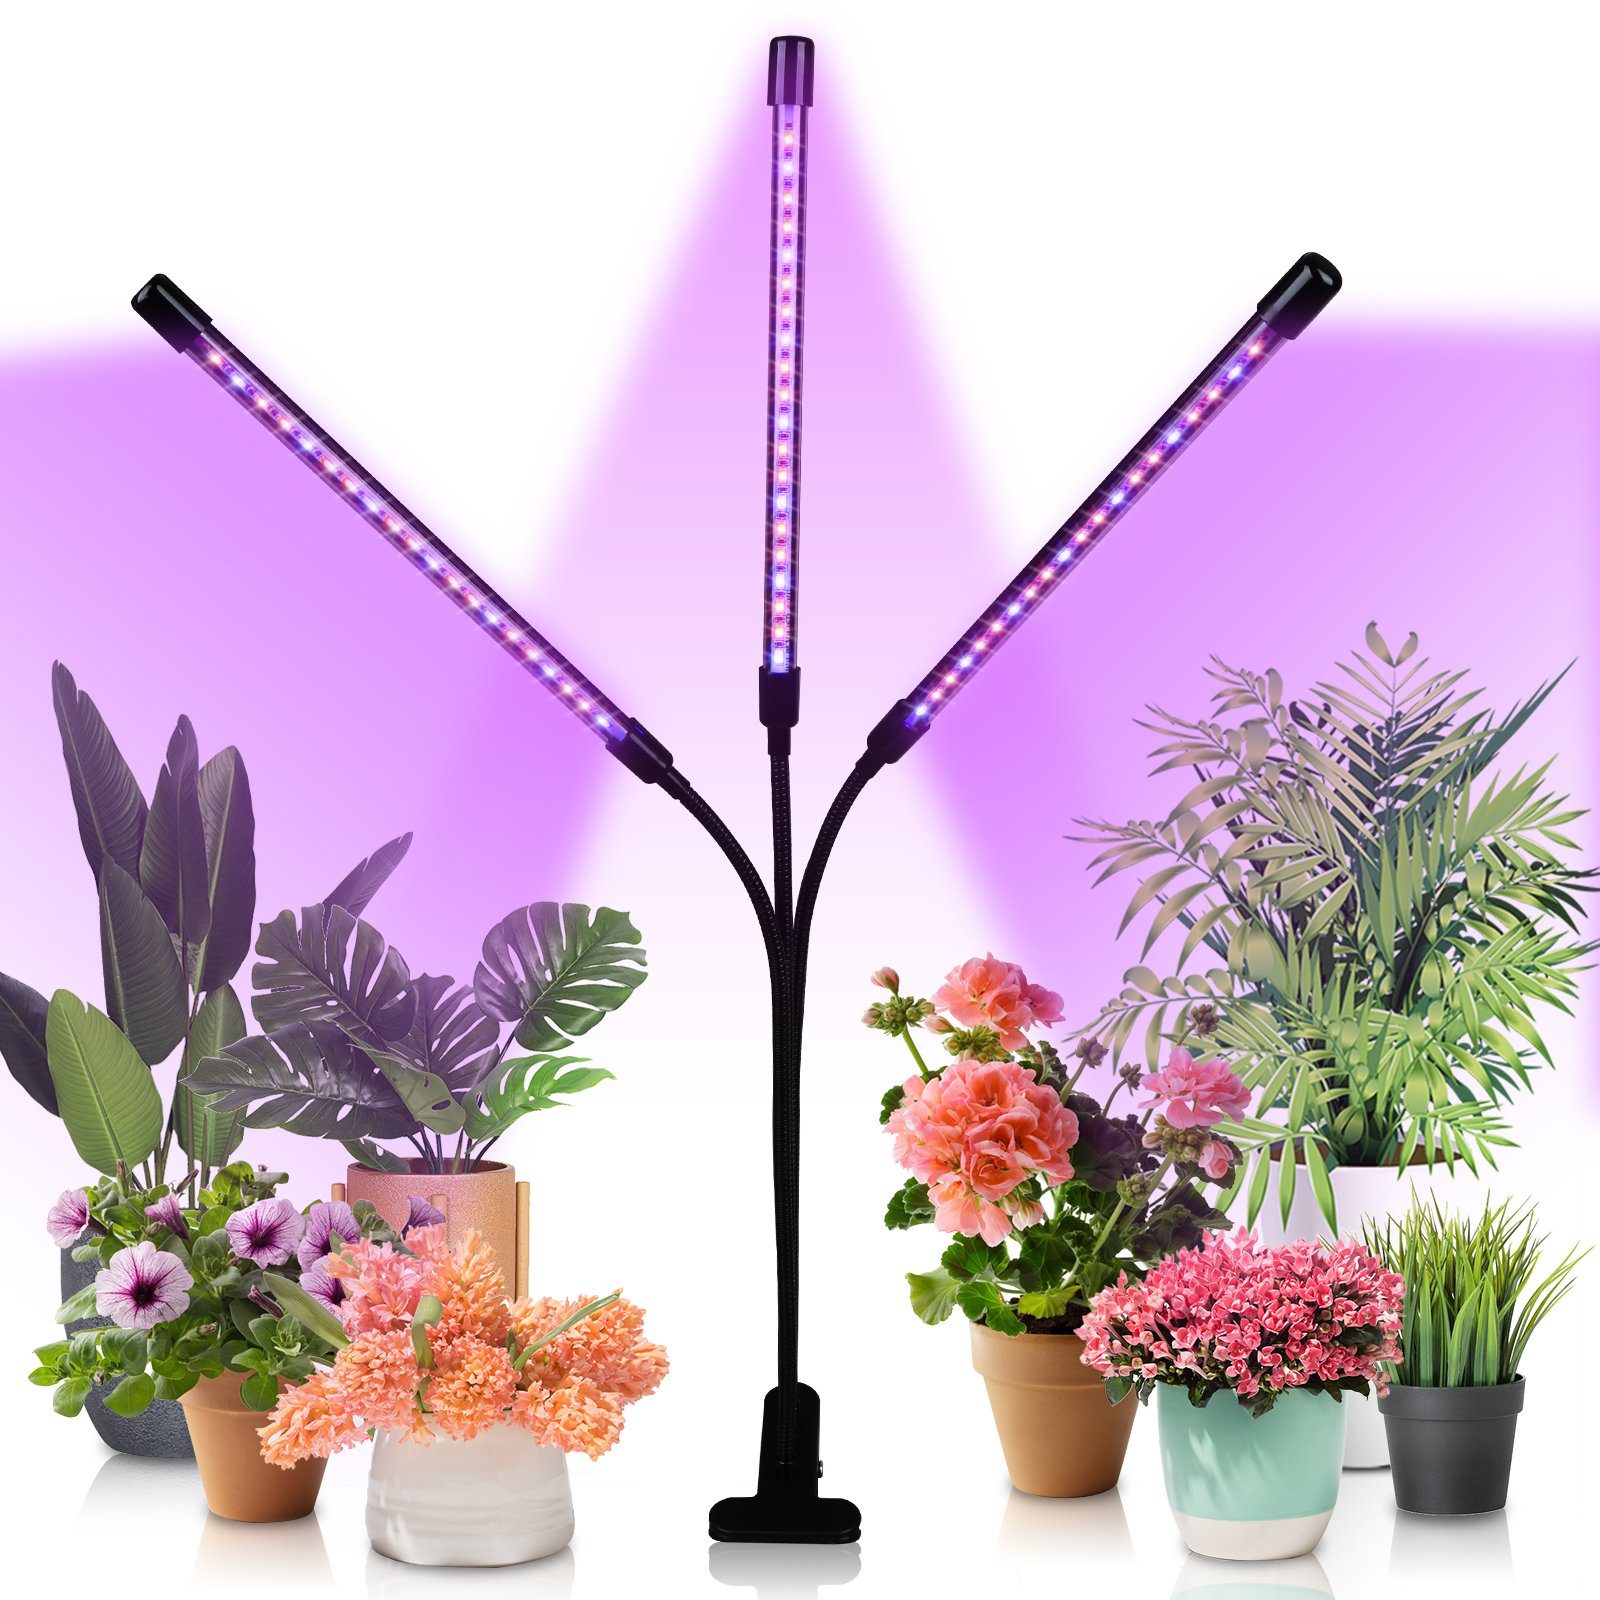 Lospitch Pflanzenlampe 3 Kopf LED Pflanzenlicht 30W Dimmbar Vollspektrum Wachstumslampe